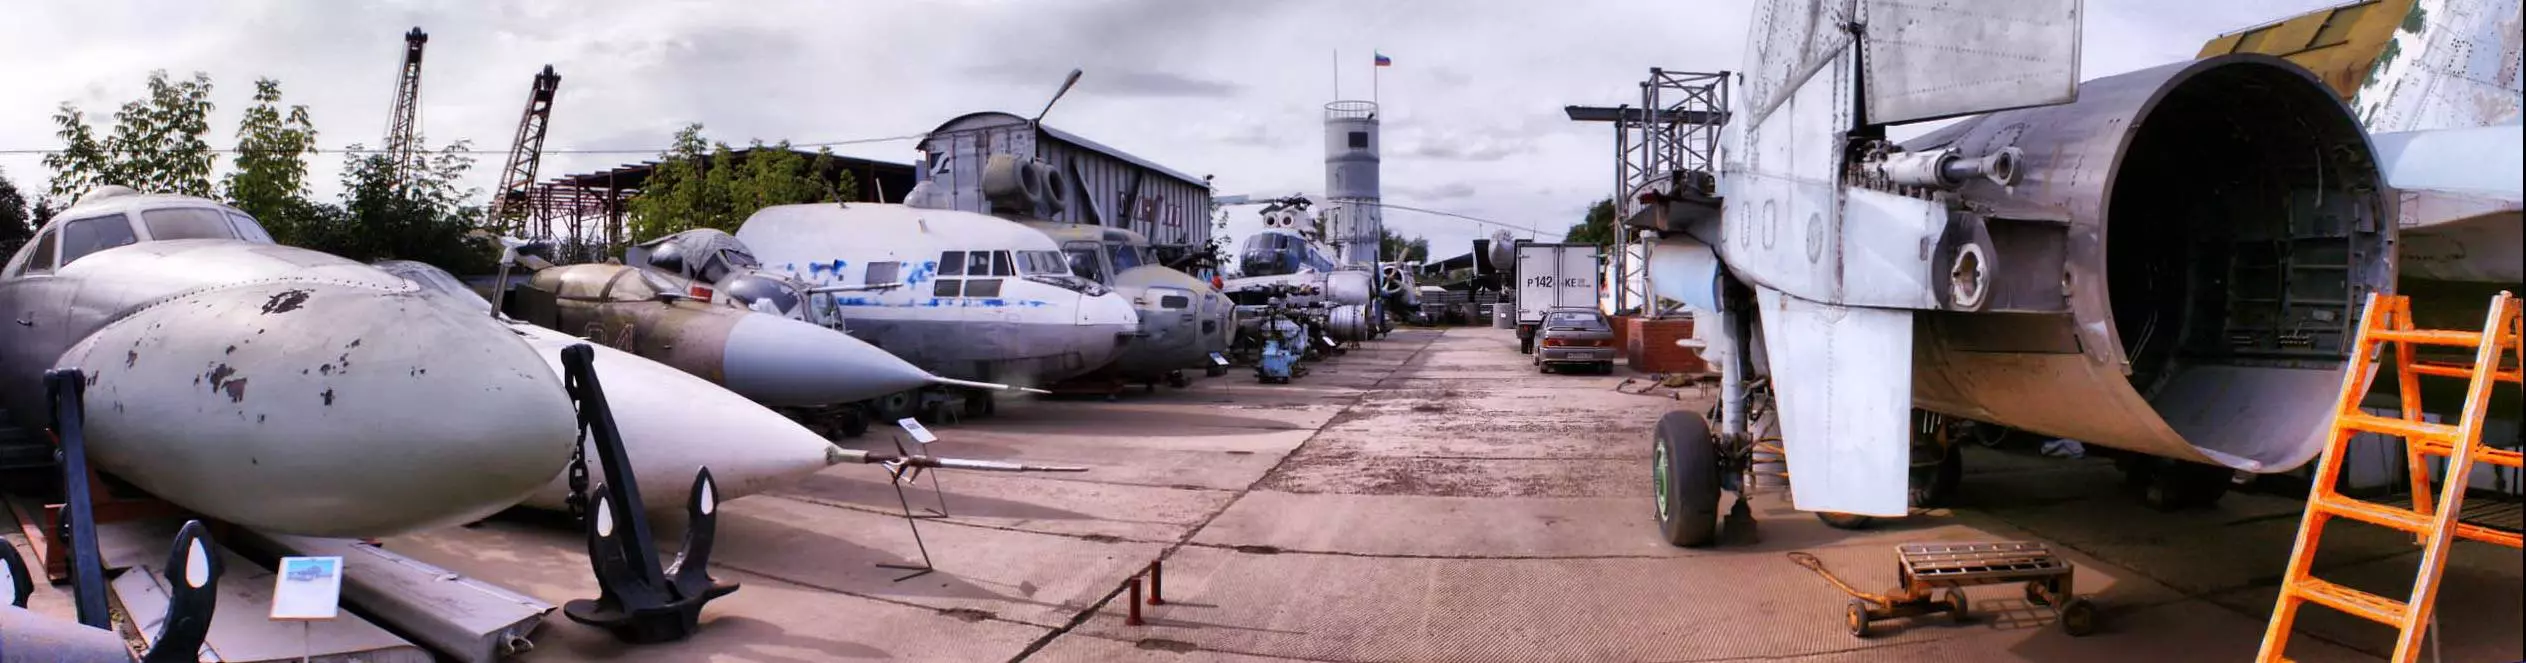 Пермский музей авиации: история, экспонаты, как добраться